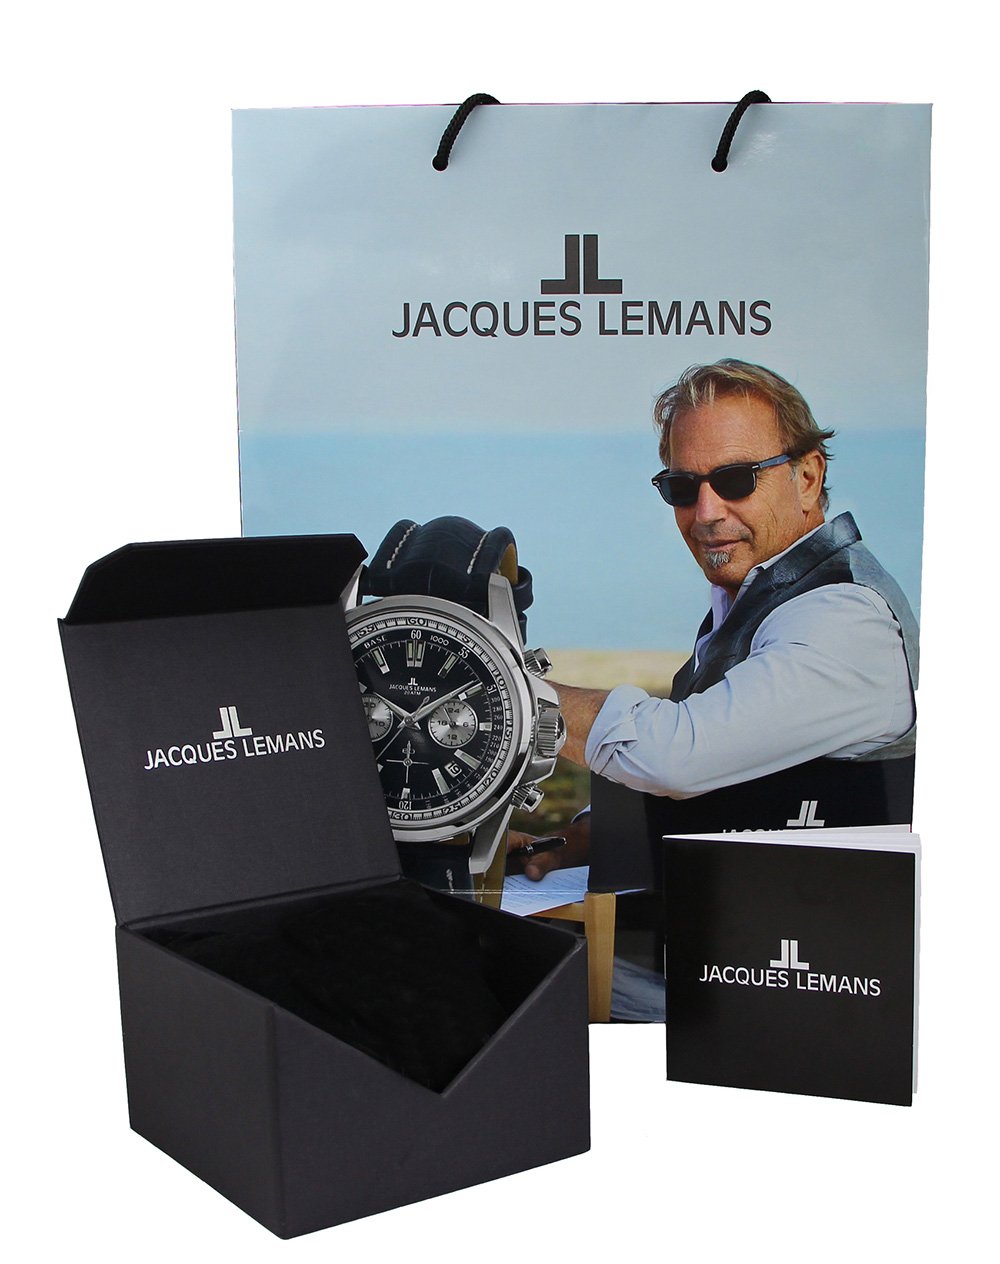 Фото часов Женские часы Jacques Lemans Milano 1-1999G